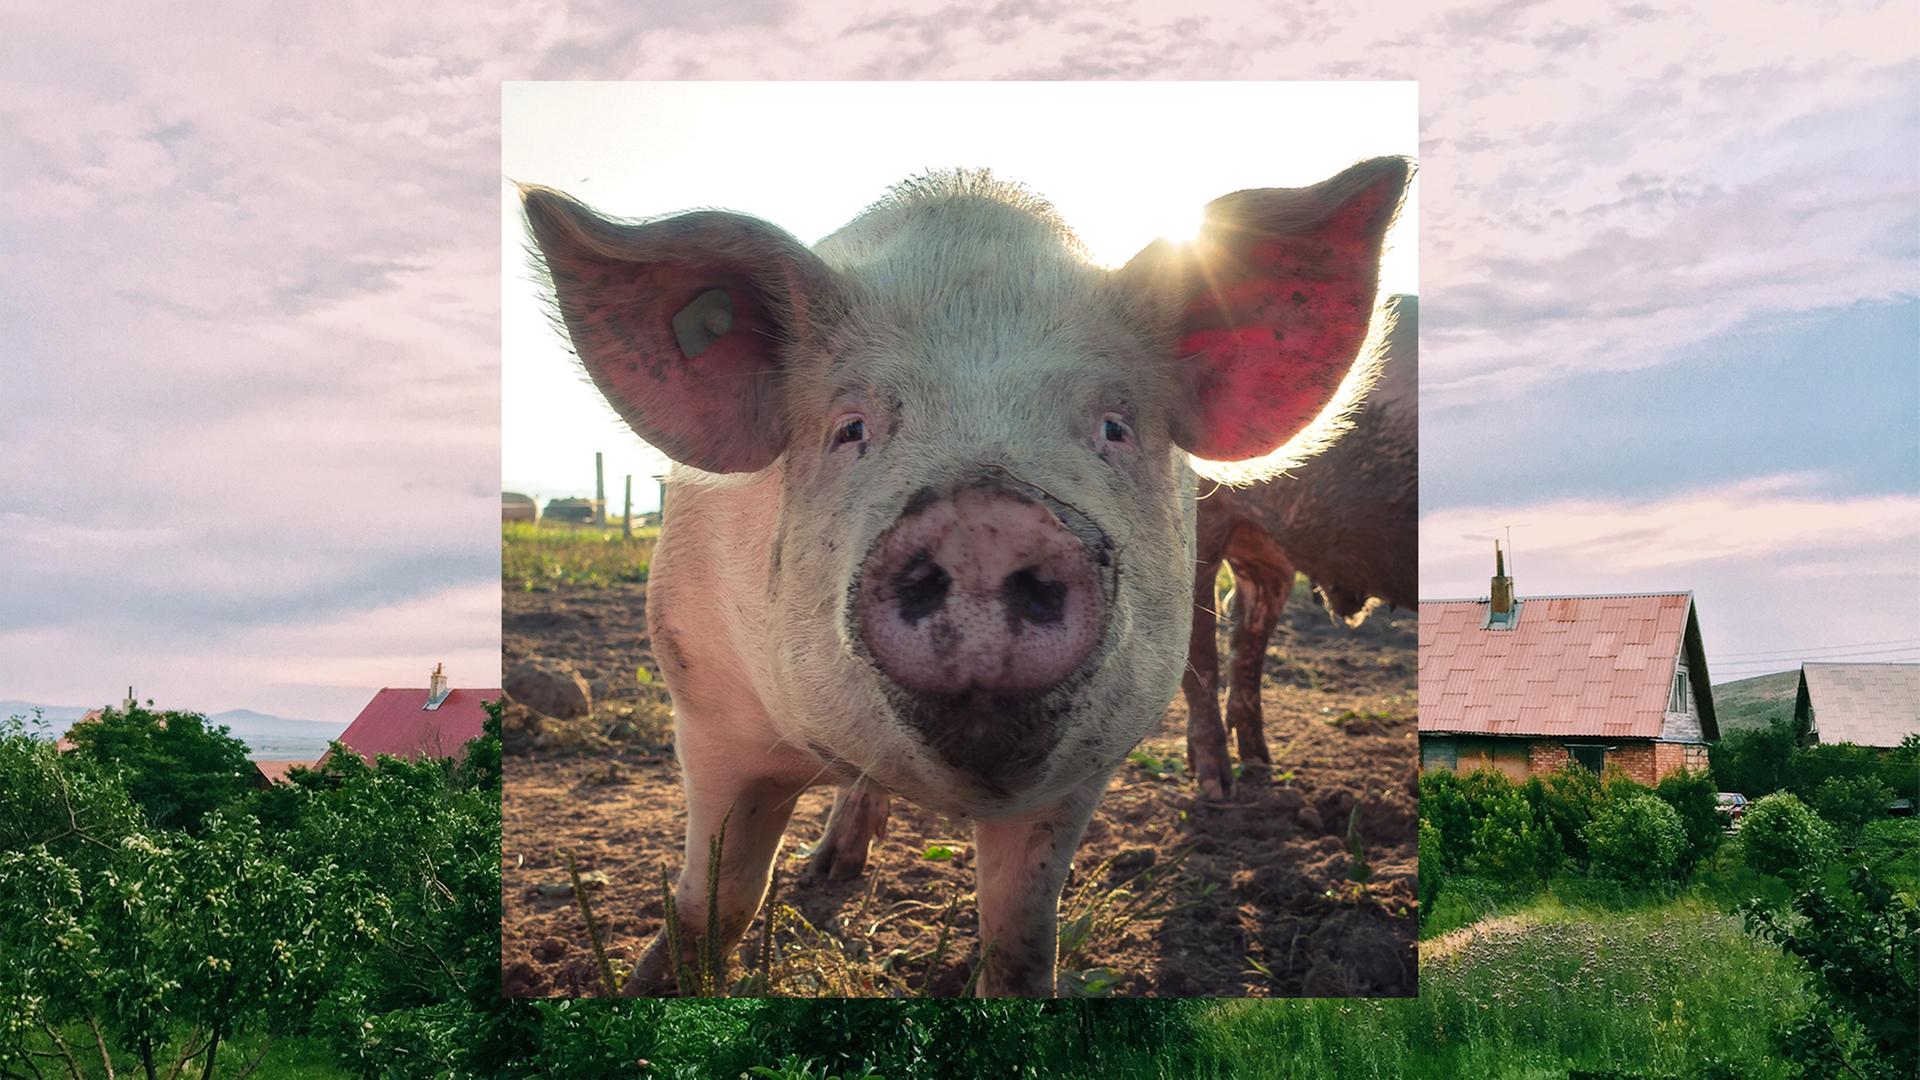 Bild in Bild: Im Vordergrund ein Schwein. Im Hintergrund Häuser in grüner Landschaft.